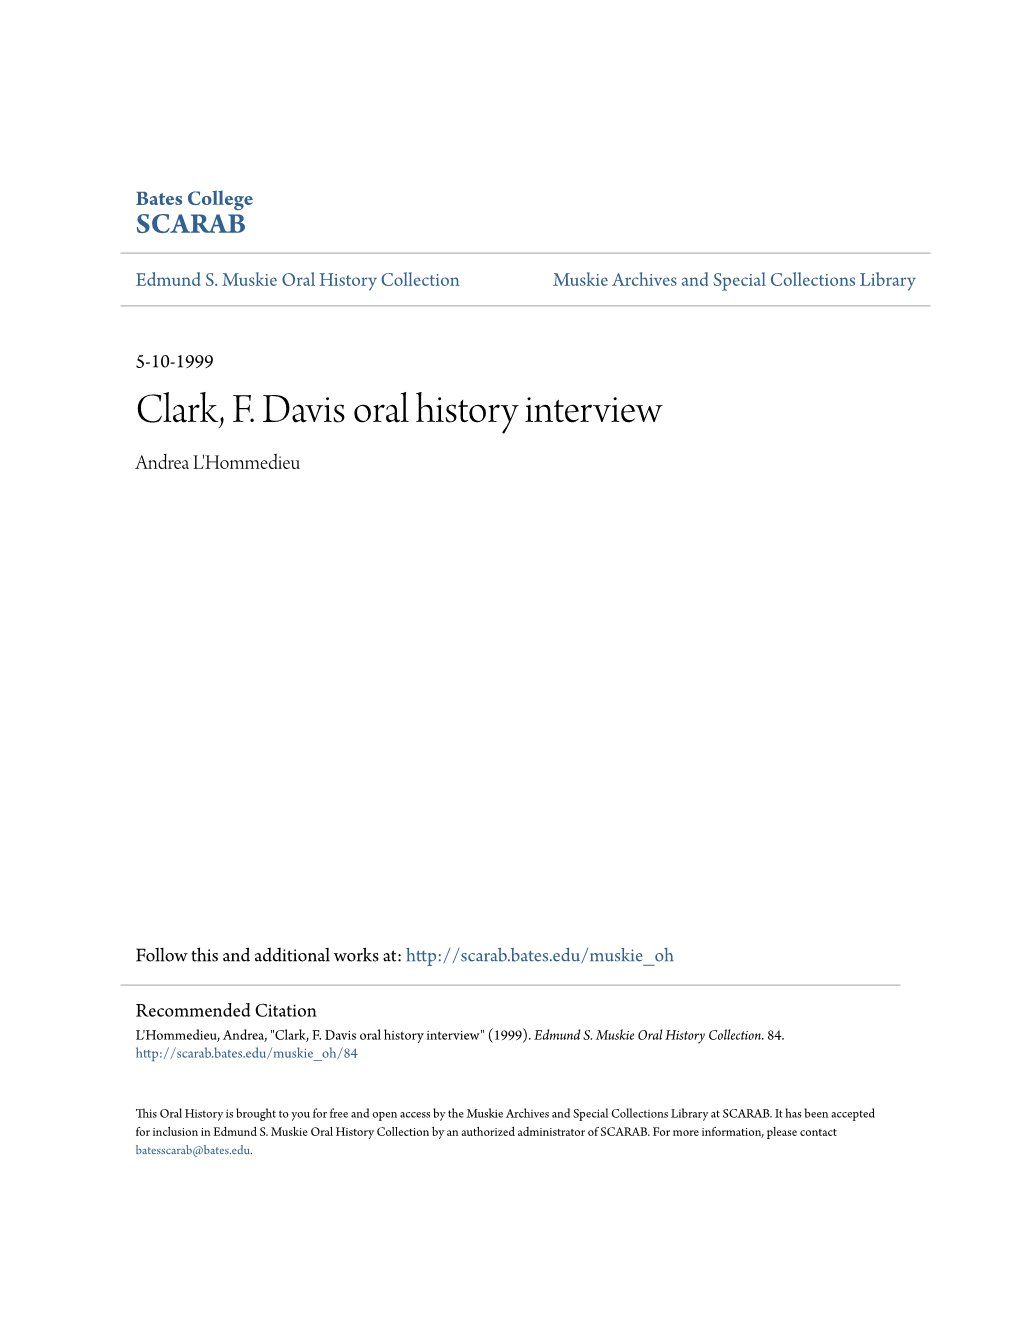 Clark, F. Davis Oral History Interview Andrea L'hommedieu